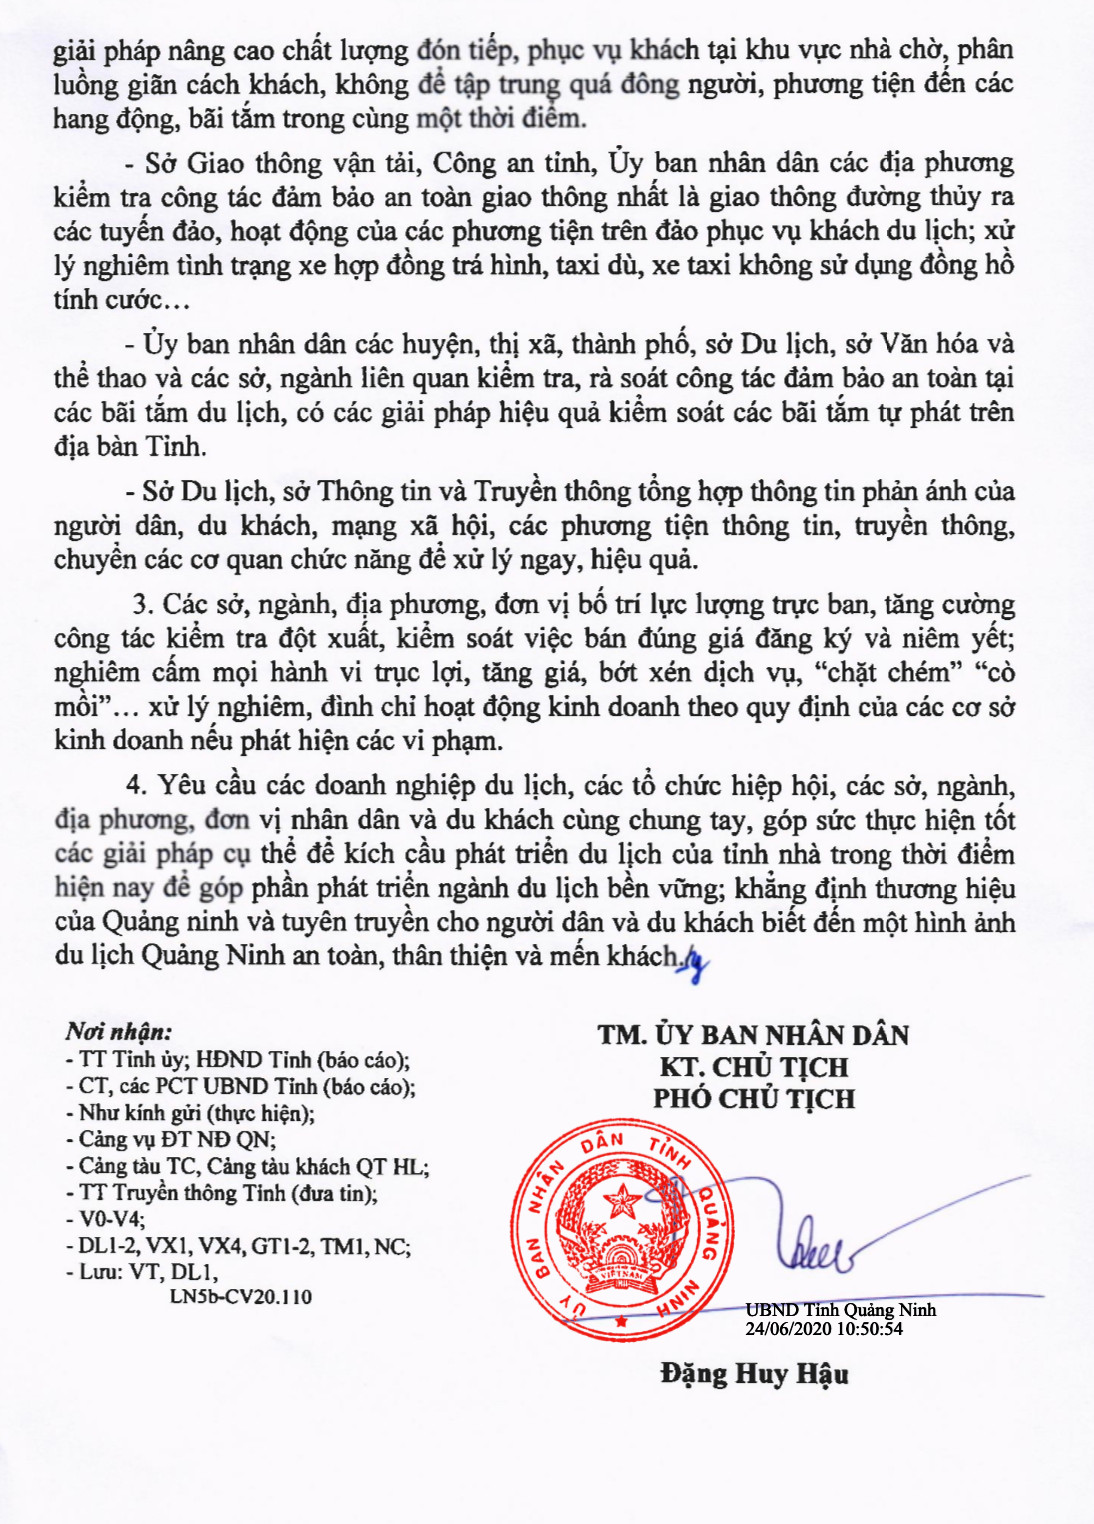 Quảng Ninh quyết liệt xử lý mọi hành vi “chặt chém” khách du lịch